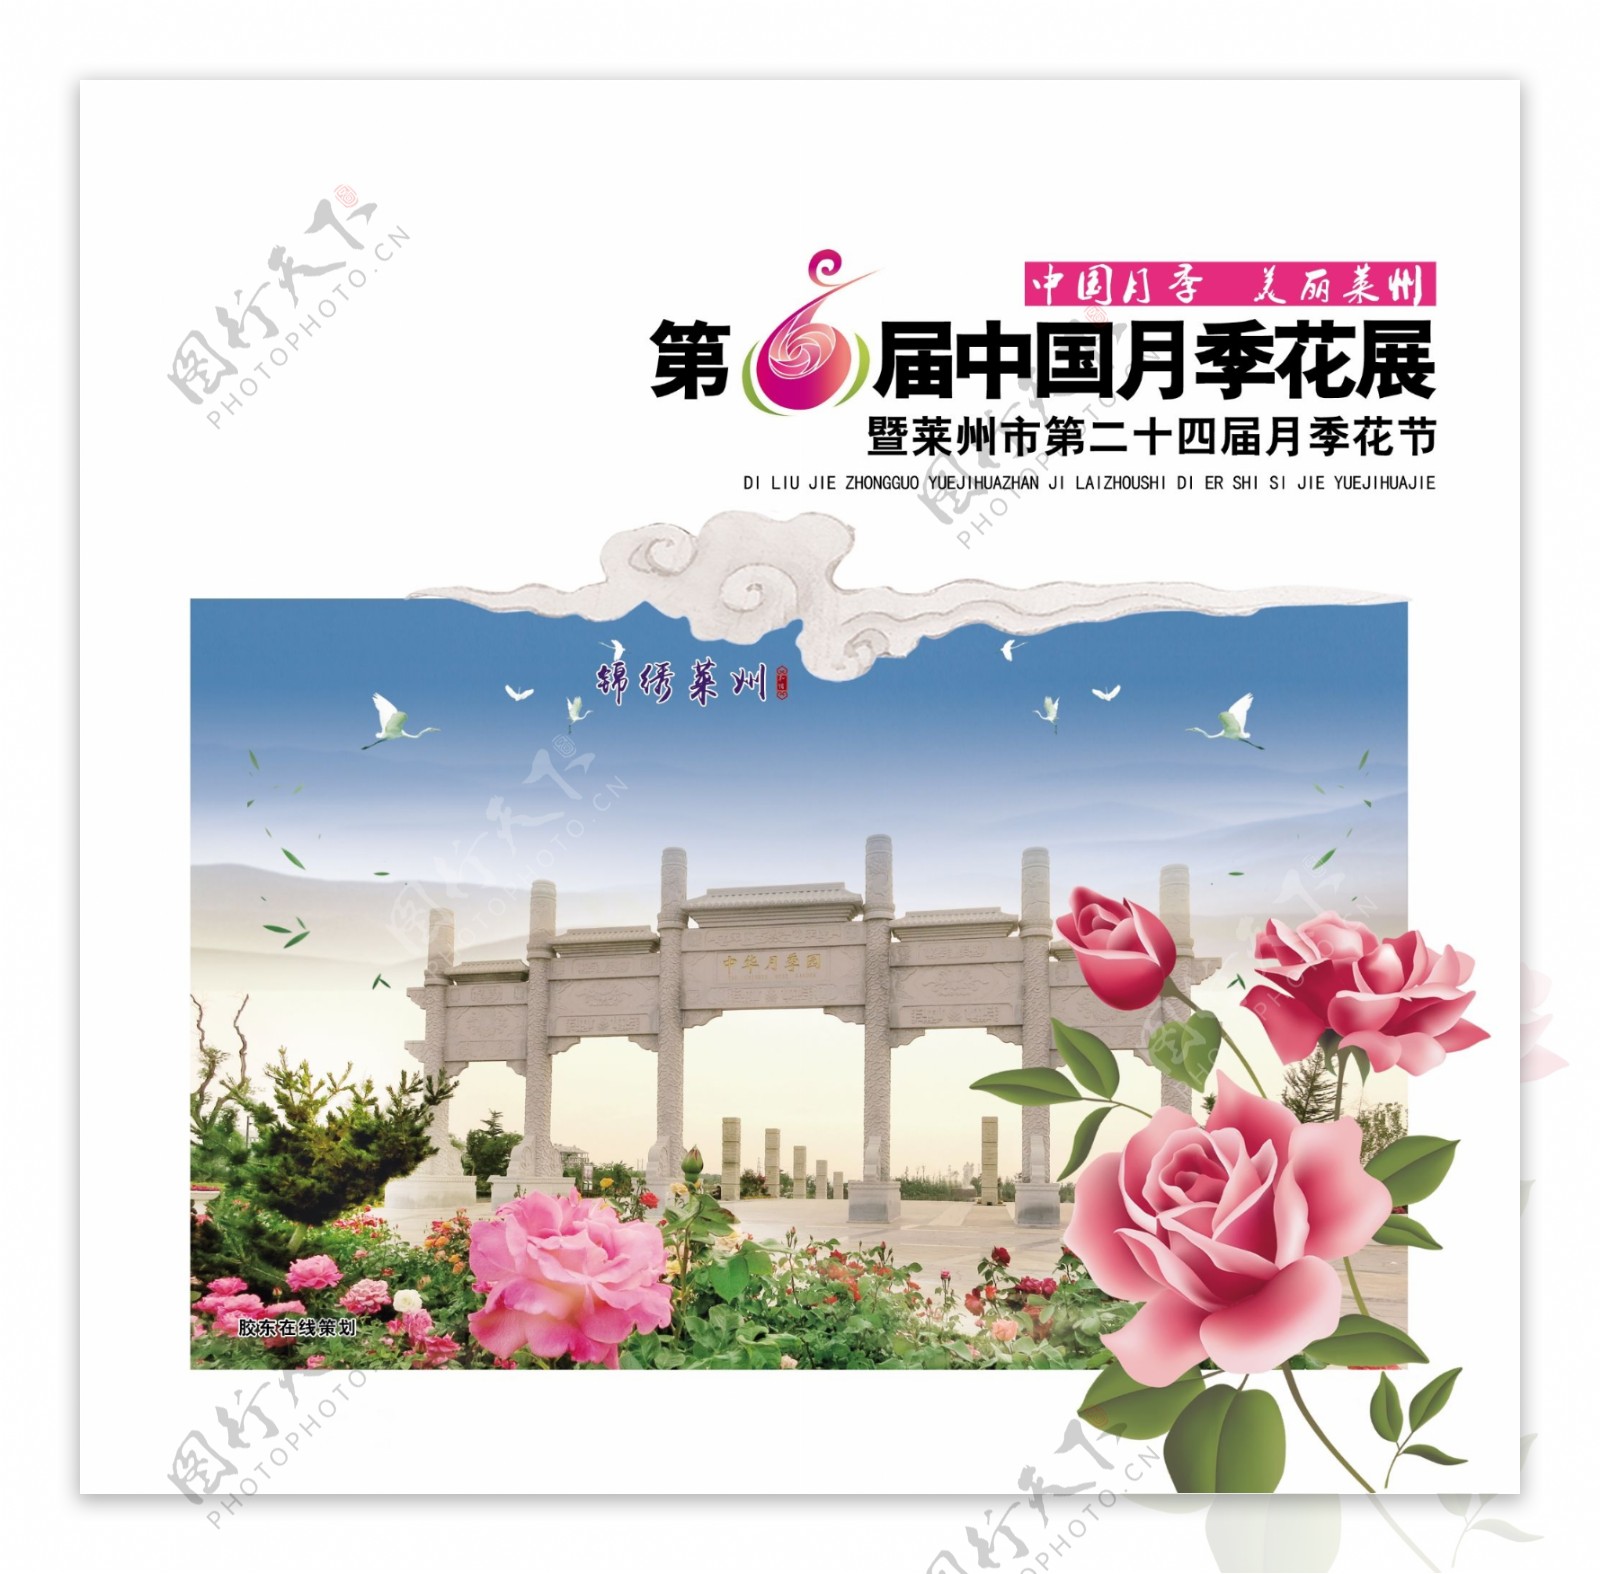 中国第六届画展邮票邮票封皮